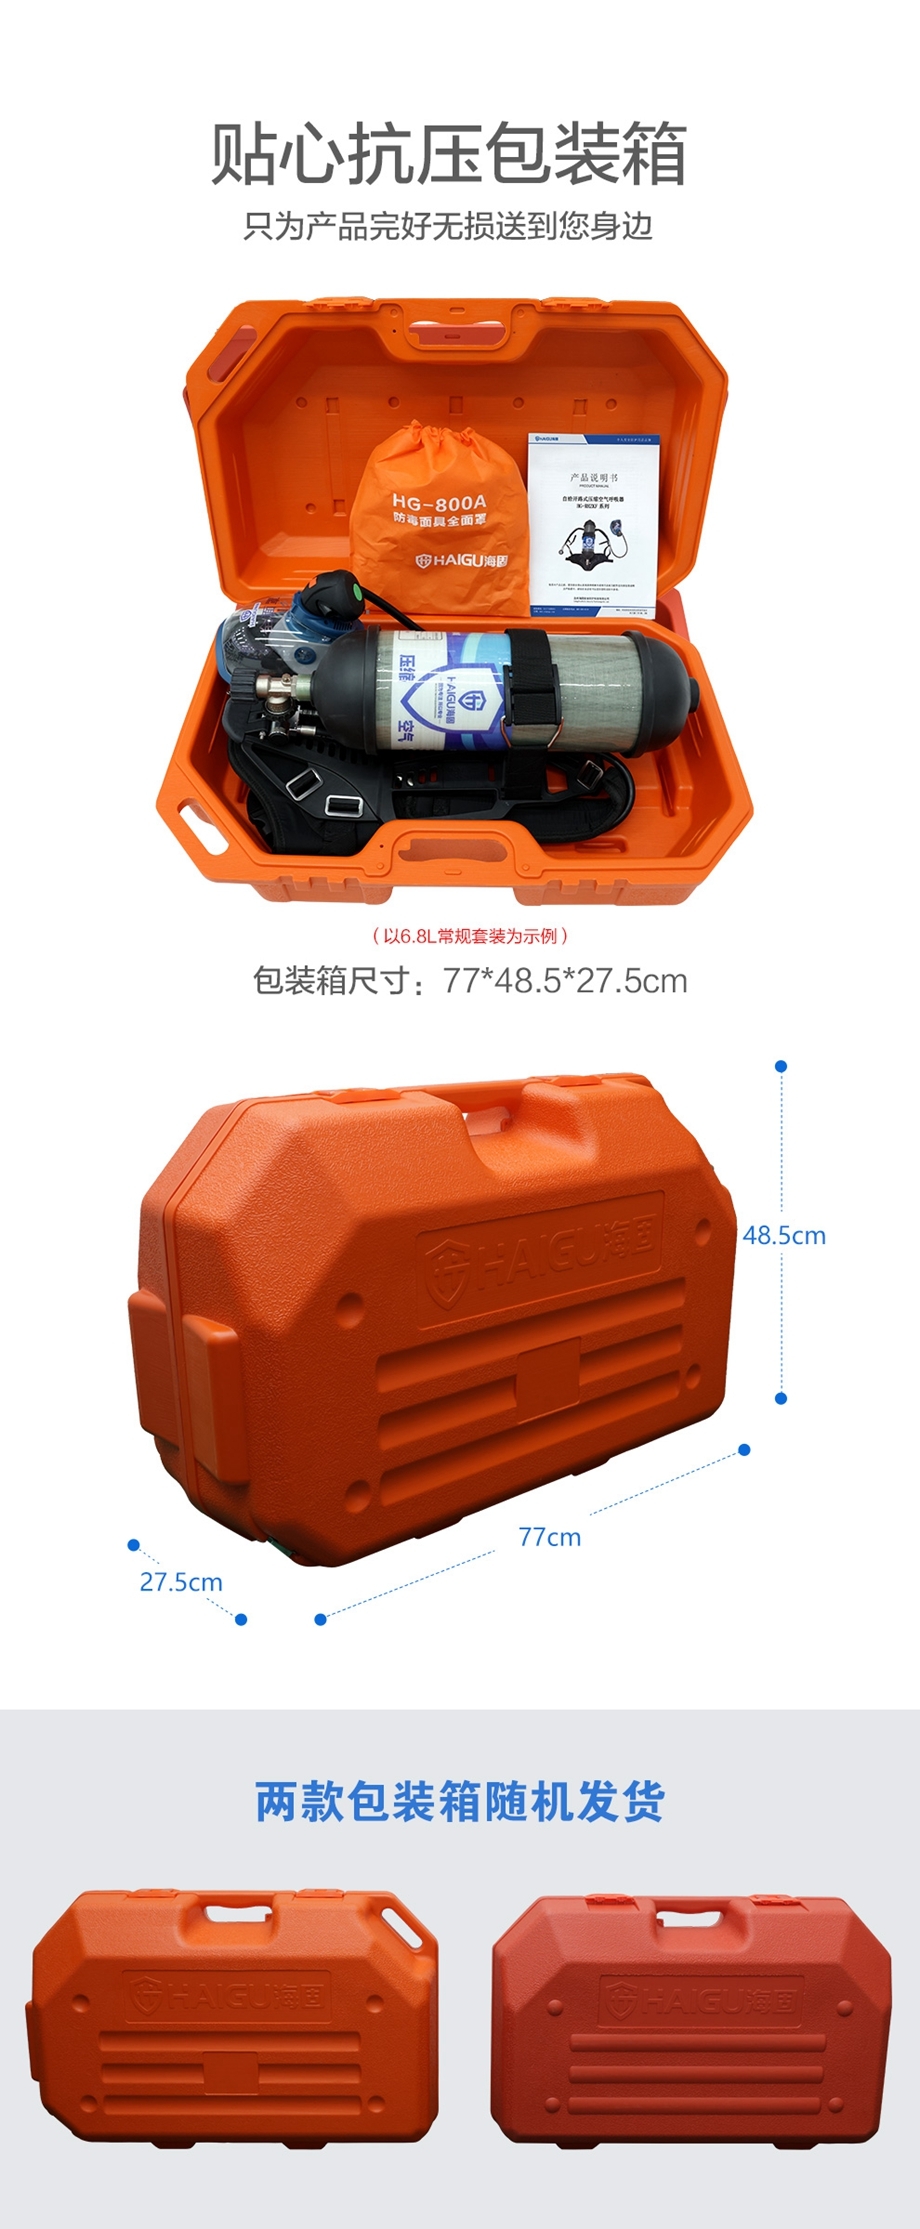 海固HG-GB-RHZKF6.8T/30 正压式空气呼吸器（装配800T通讯面罩）